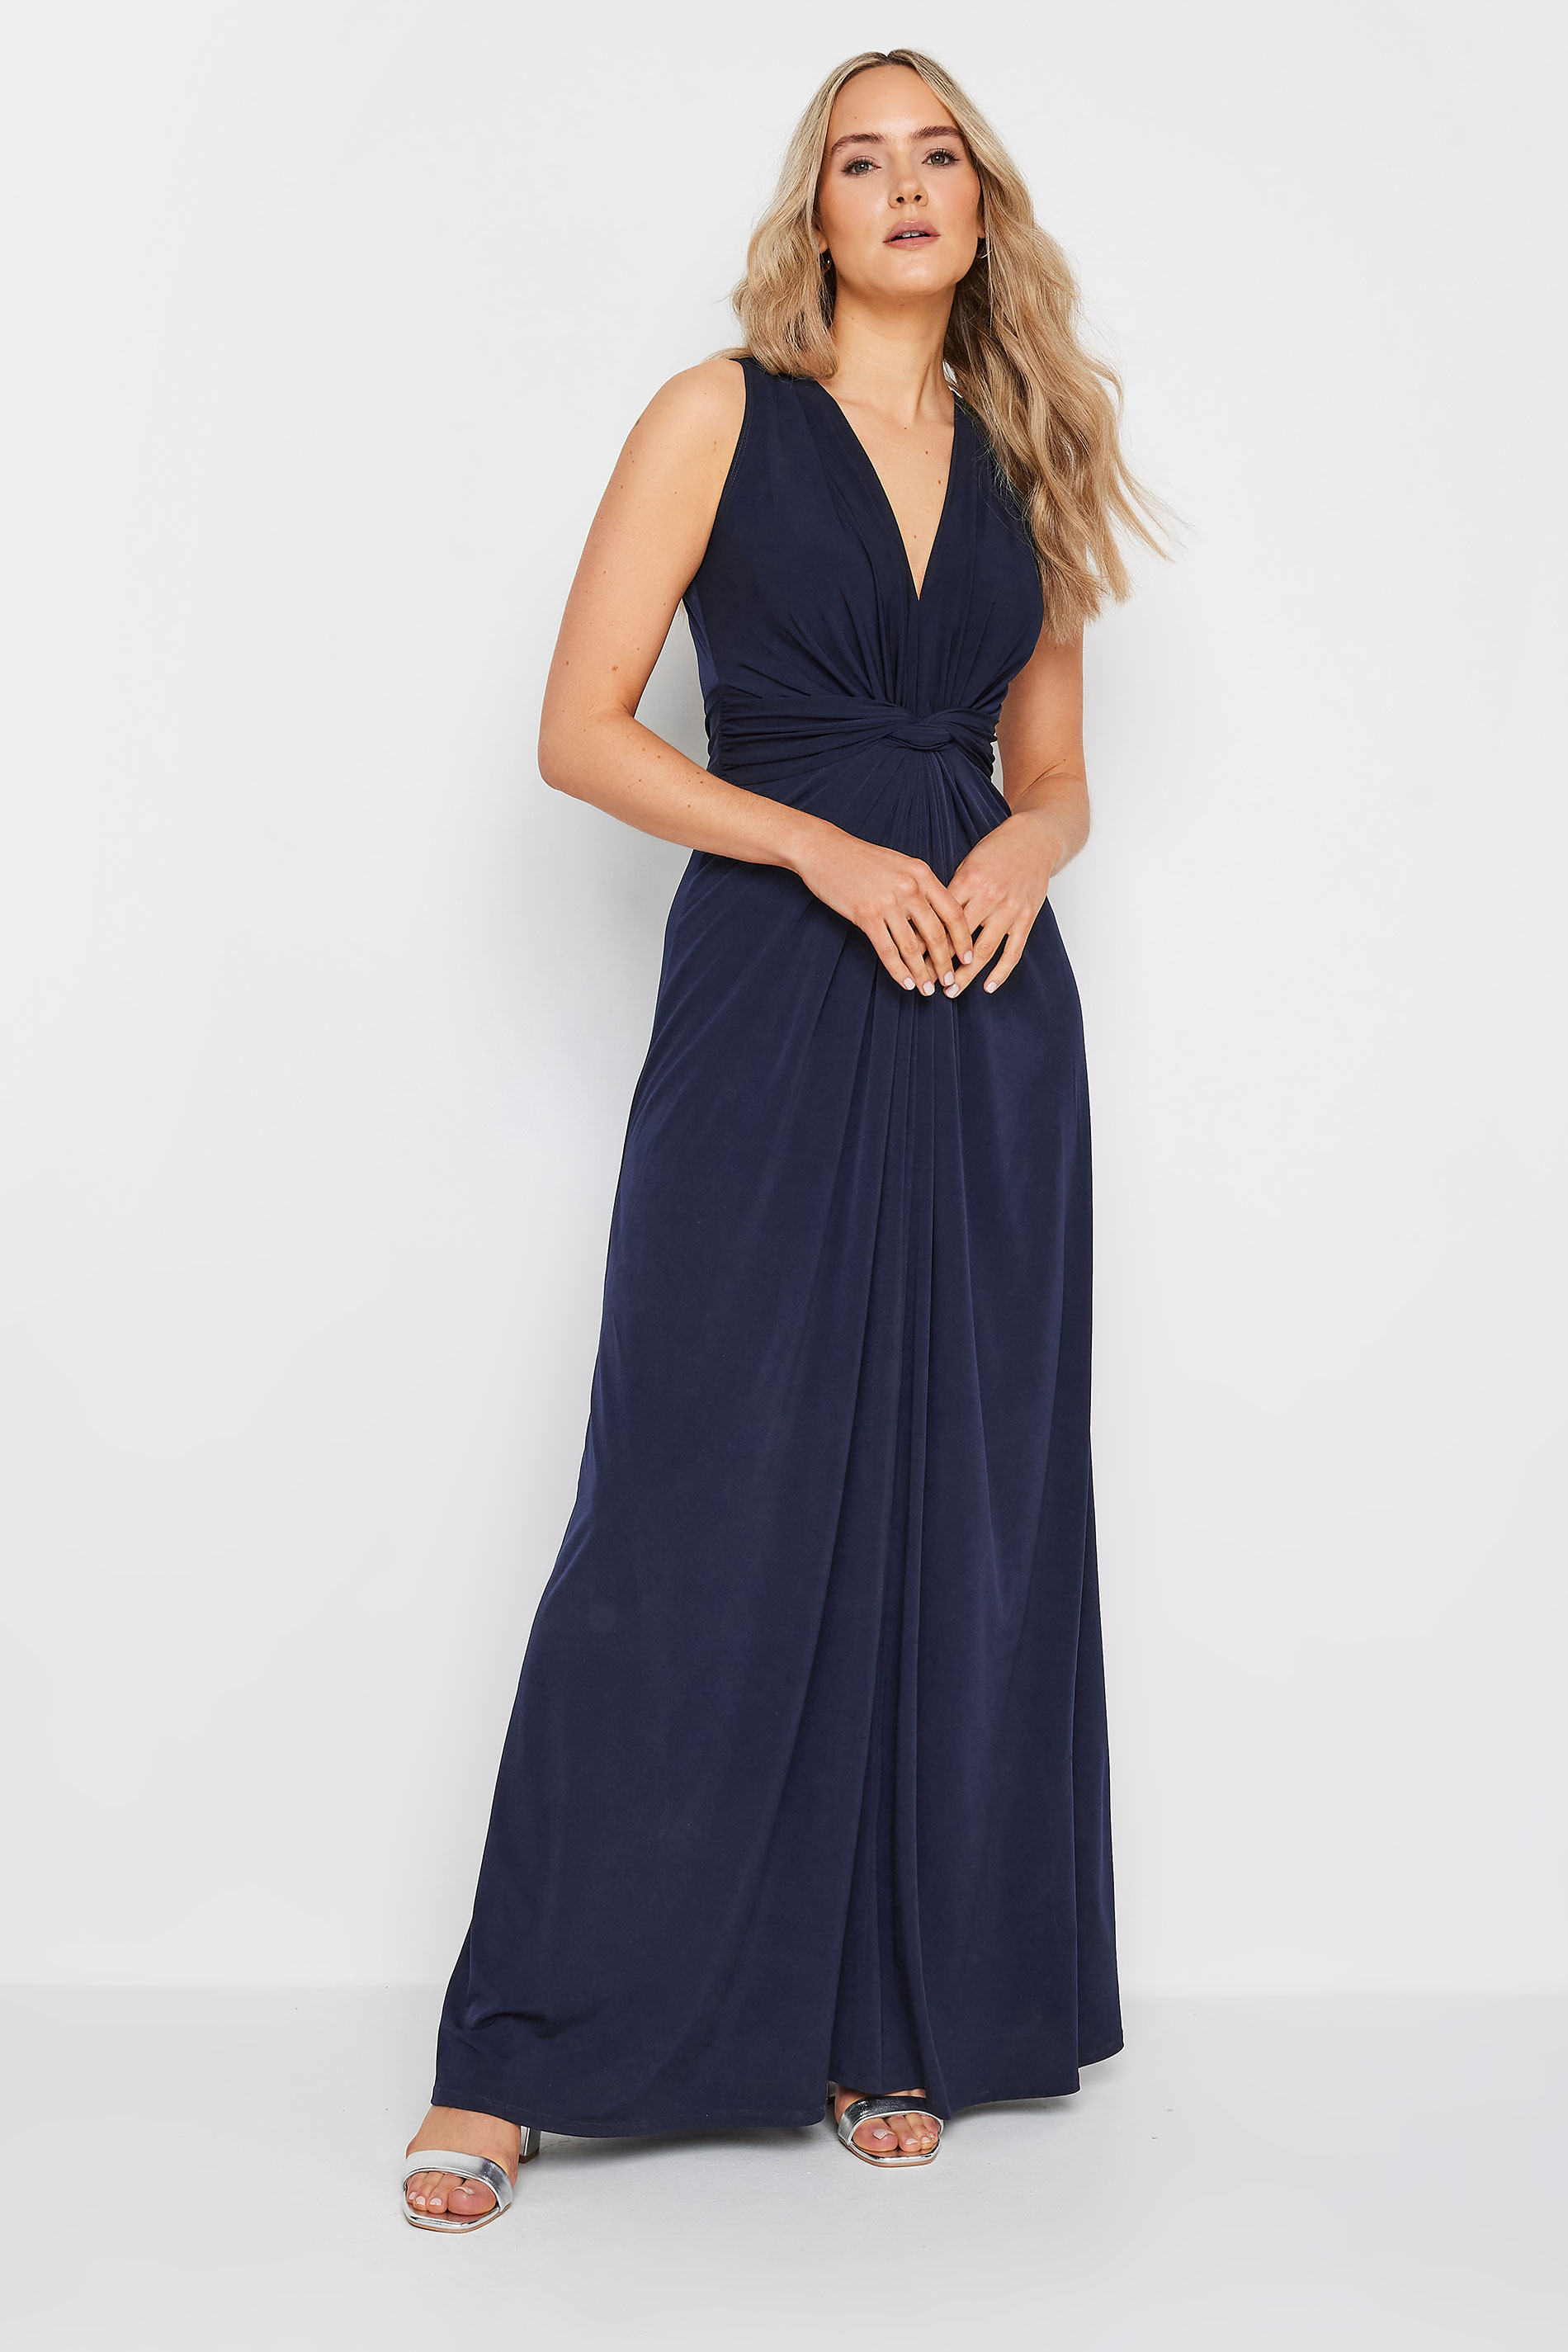 LTS Tall Womens Navy Blue Knot Front Maxi Dress | Long Tall Sally 2